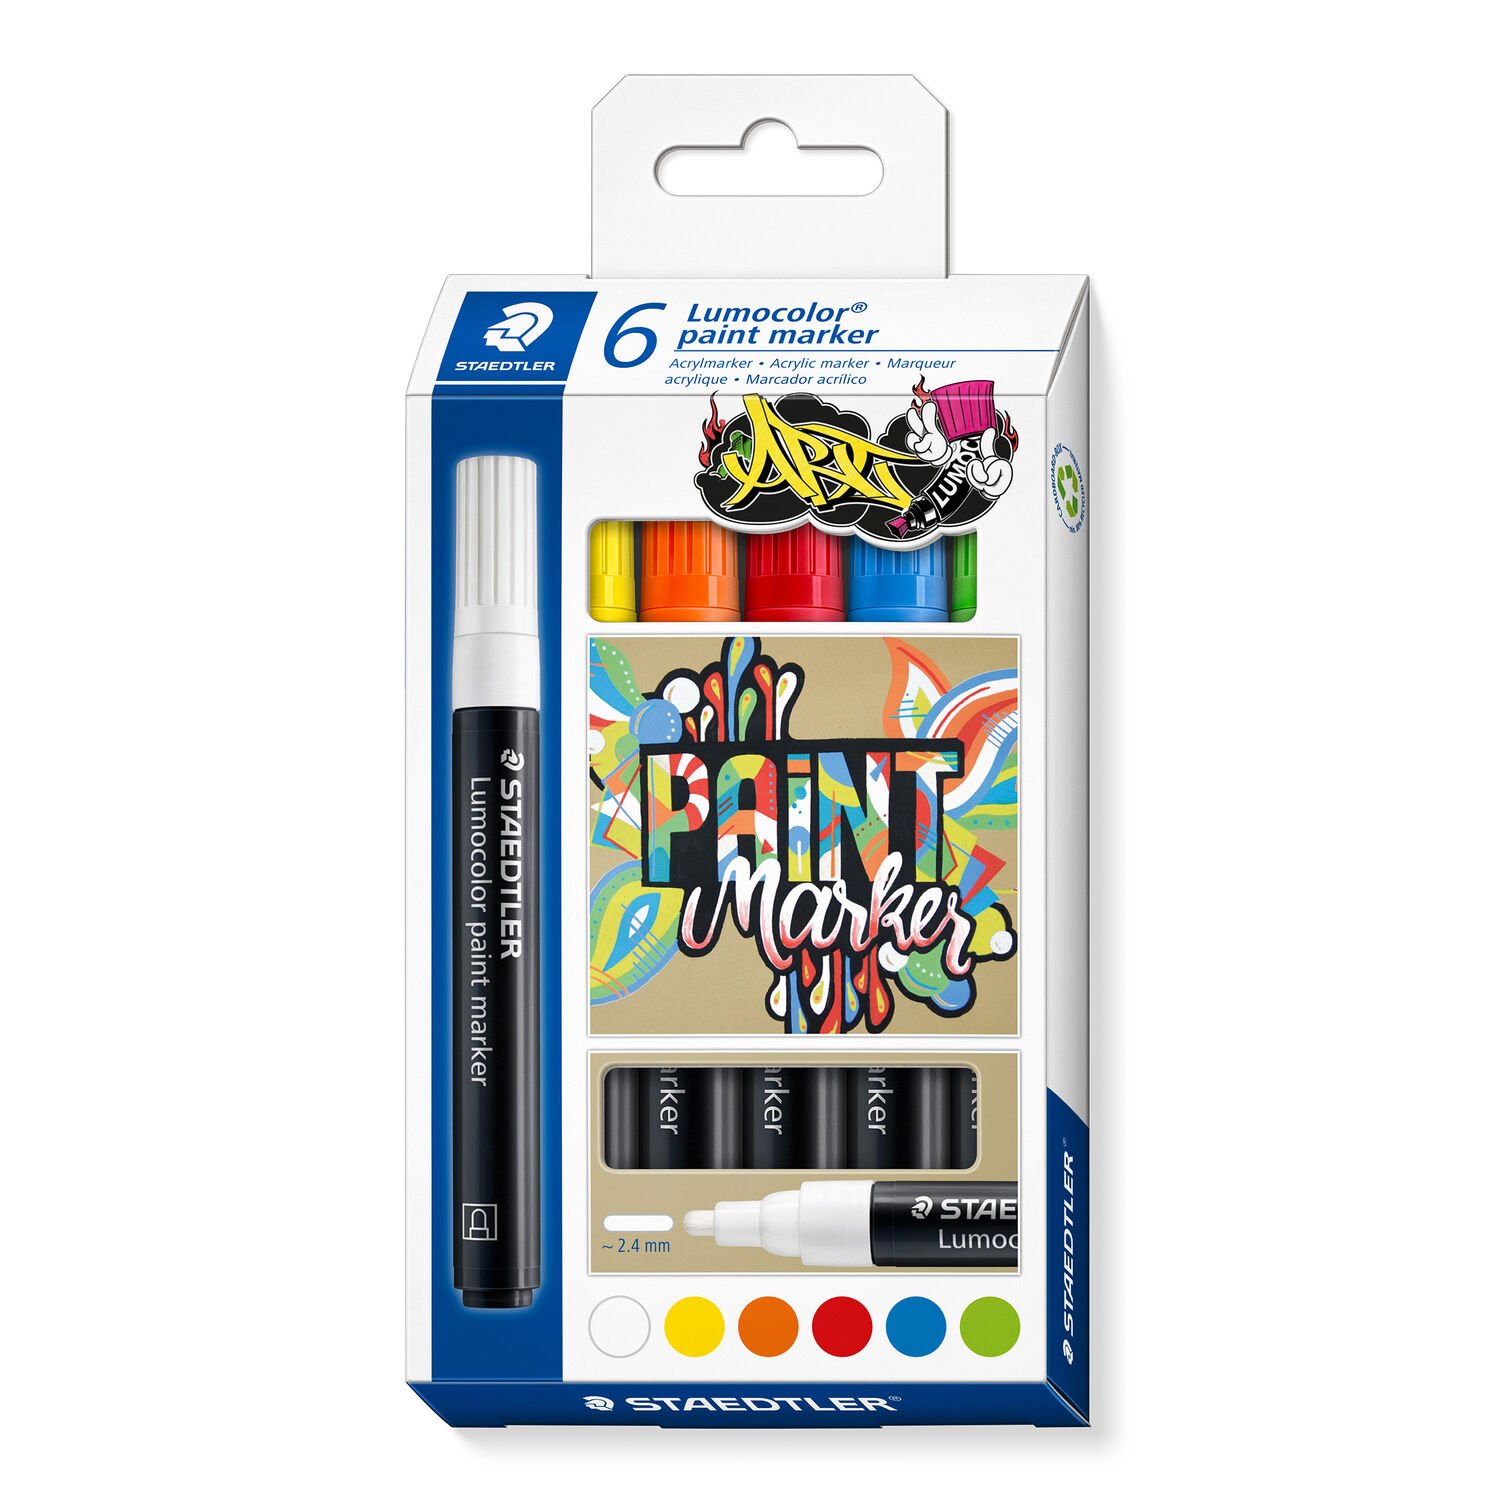 Kartonetui "Lumocolor ART" mit 6 Lumocolor paint marker in sortierten Farben